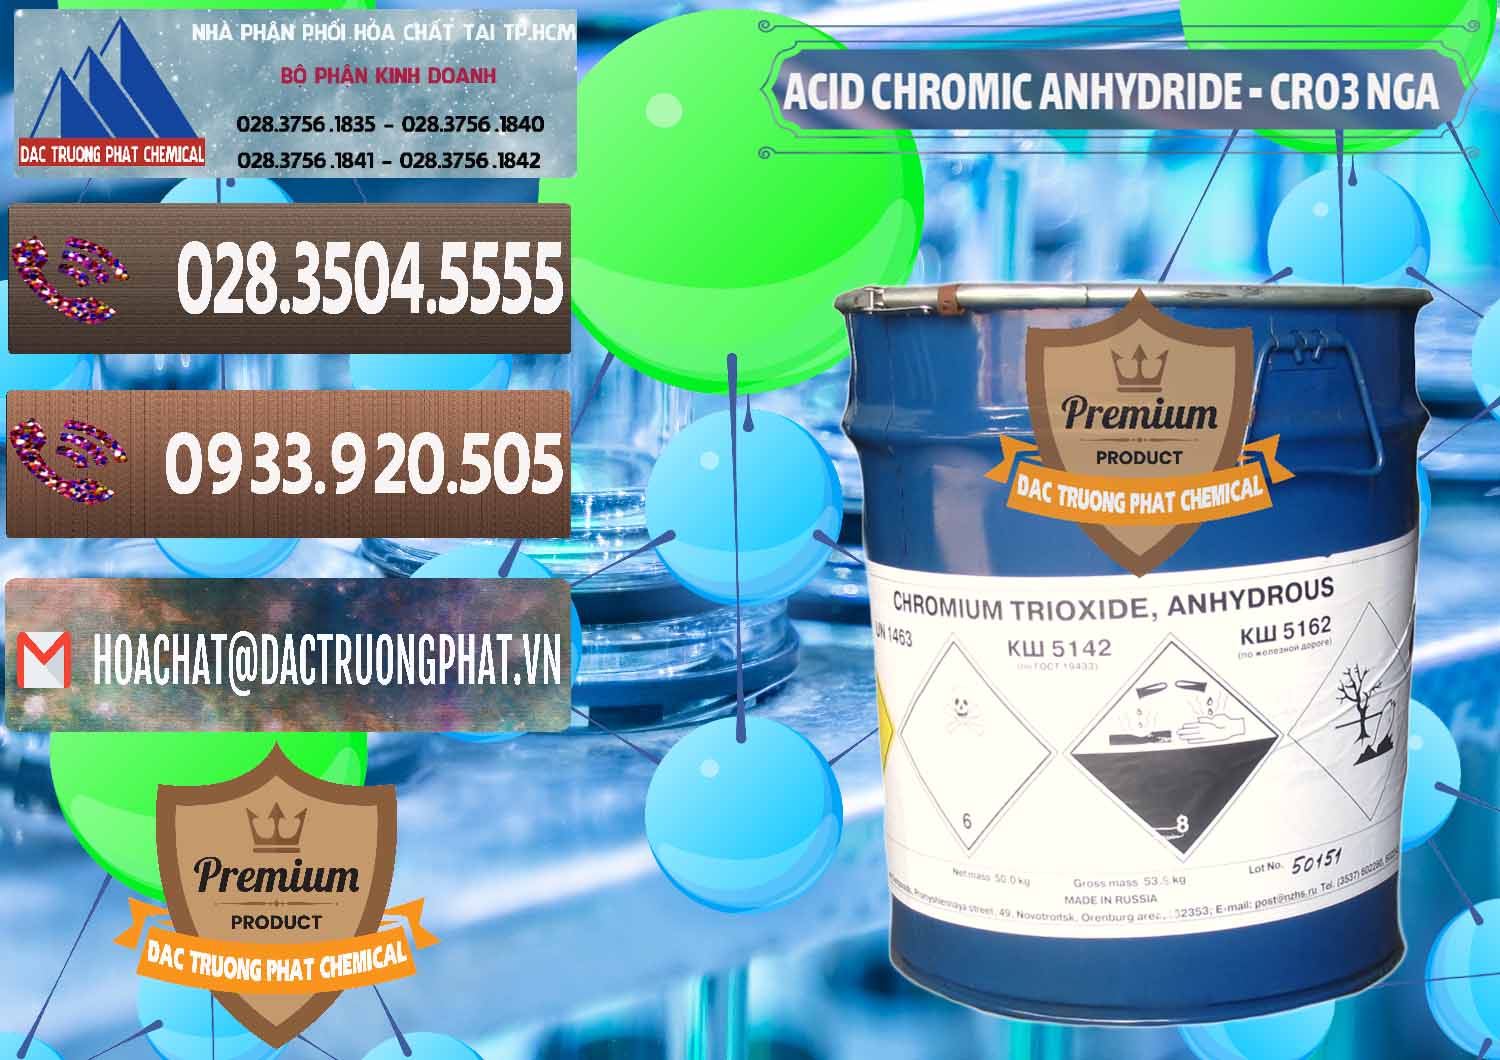 Chuyên bán và phân phối Acid Chromic Anhydride - Cromic CRO3 Nga Russia - 0006 - Đơn vị cung cấp & kinh doanh hóa chất tại TP.HCM - hoachatviet.net